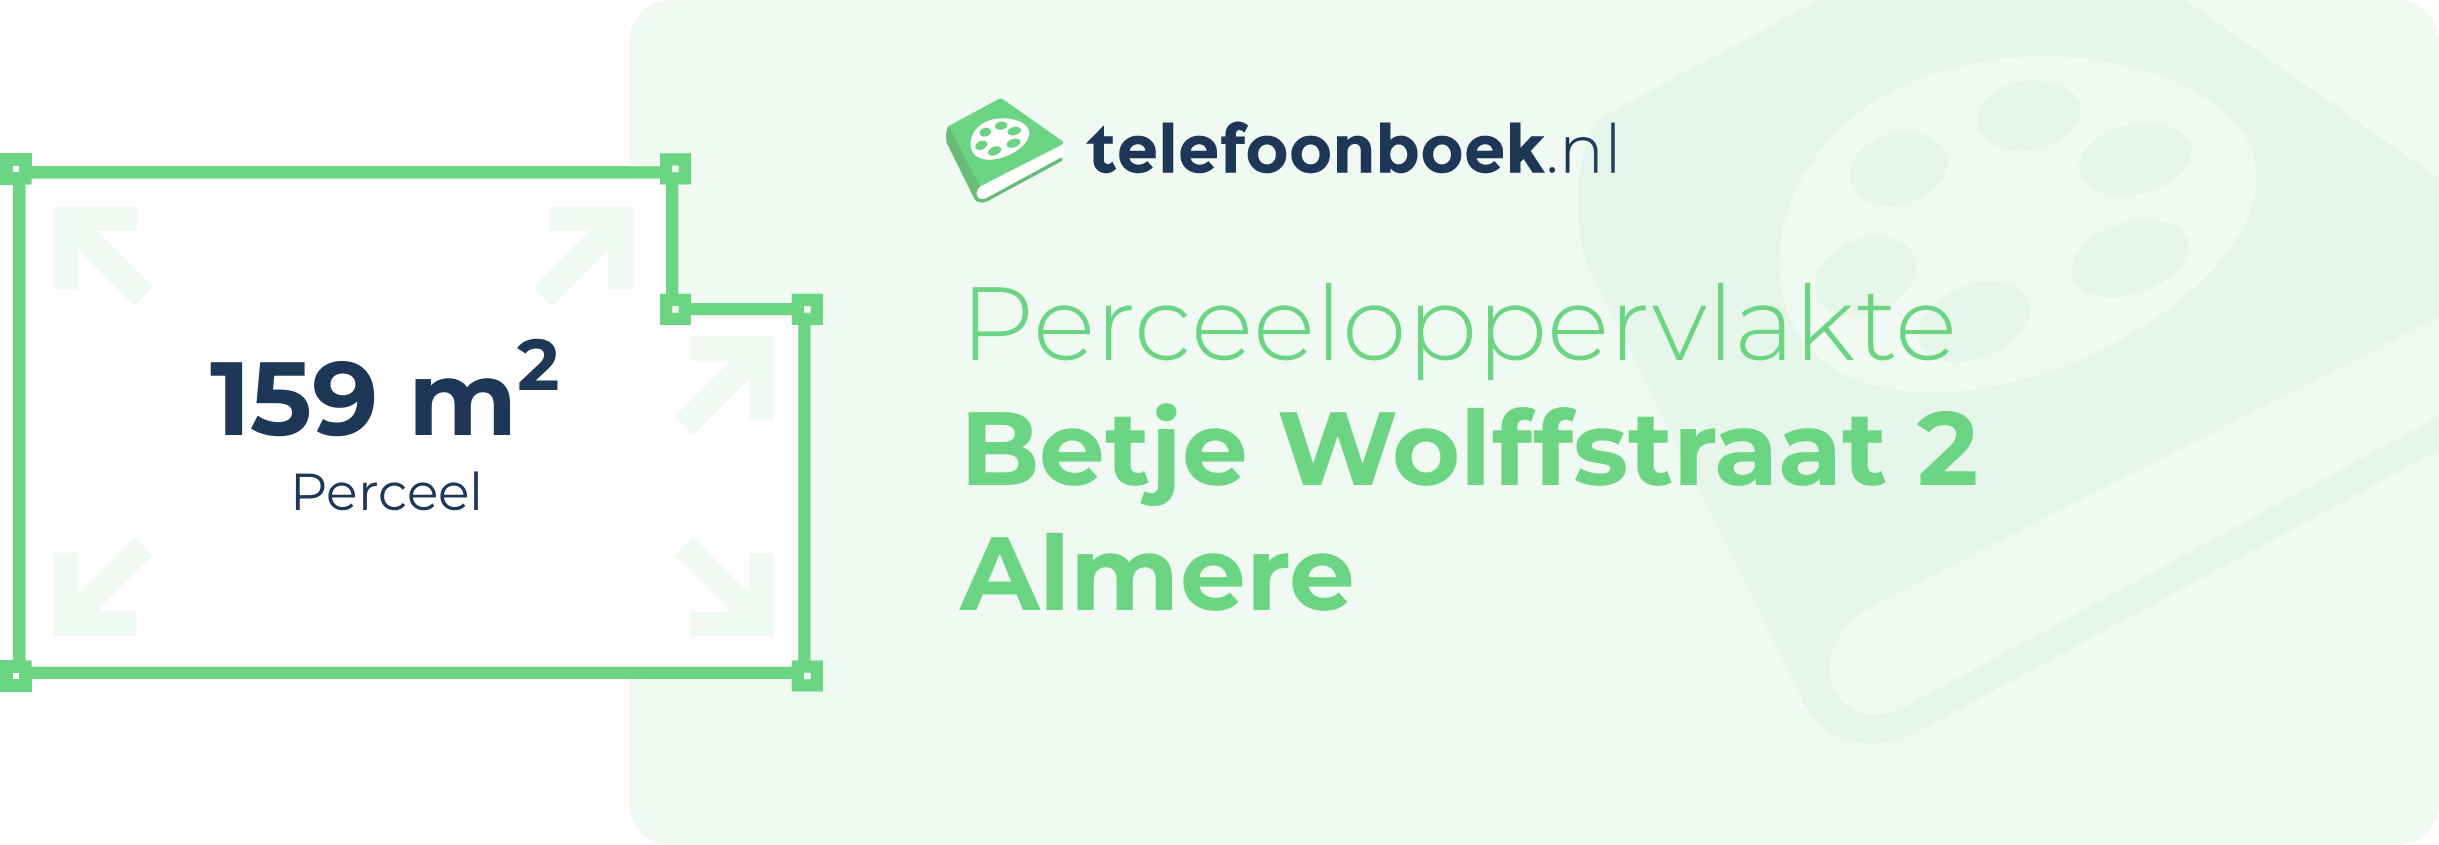 Perceeloppervlakte Betje Wolffstraat 2 Almere